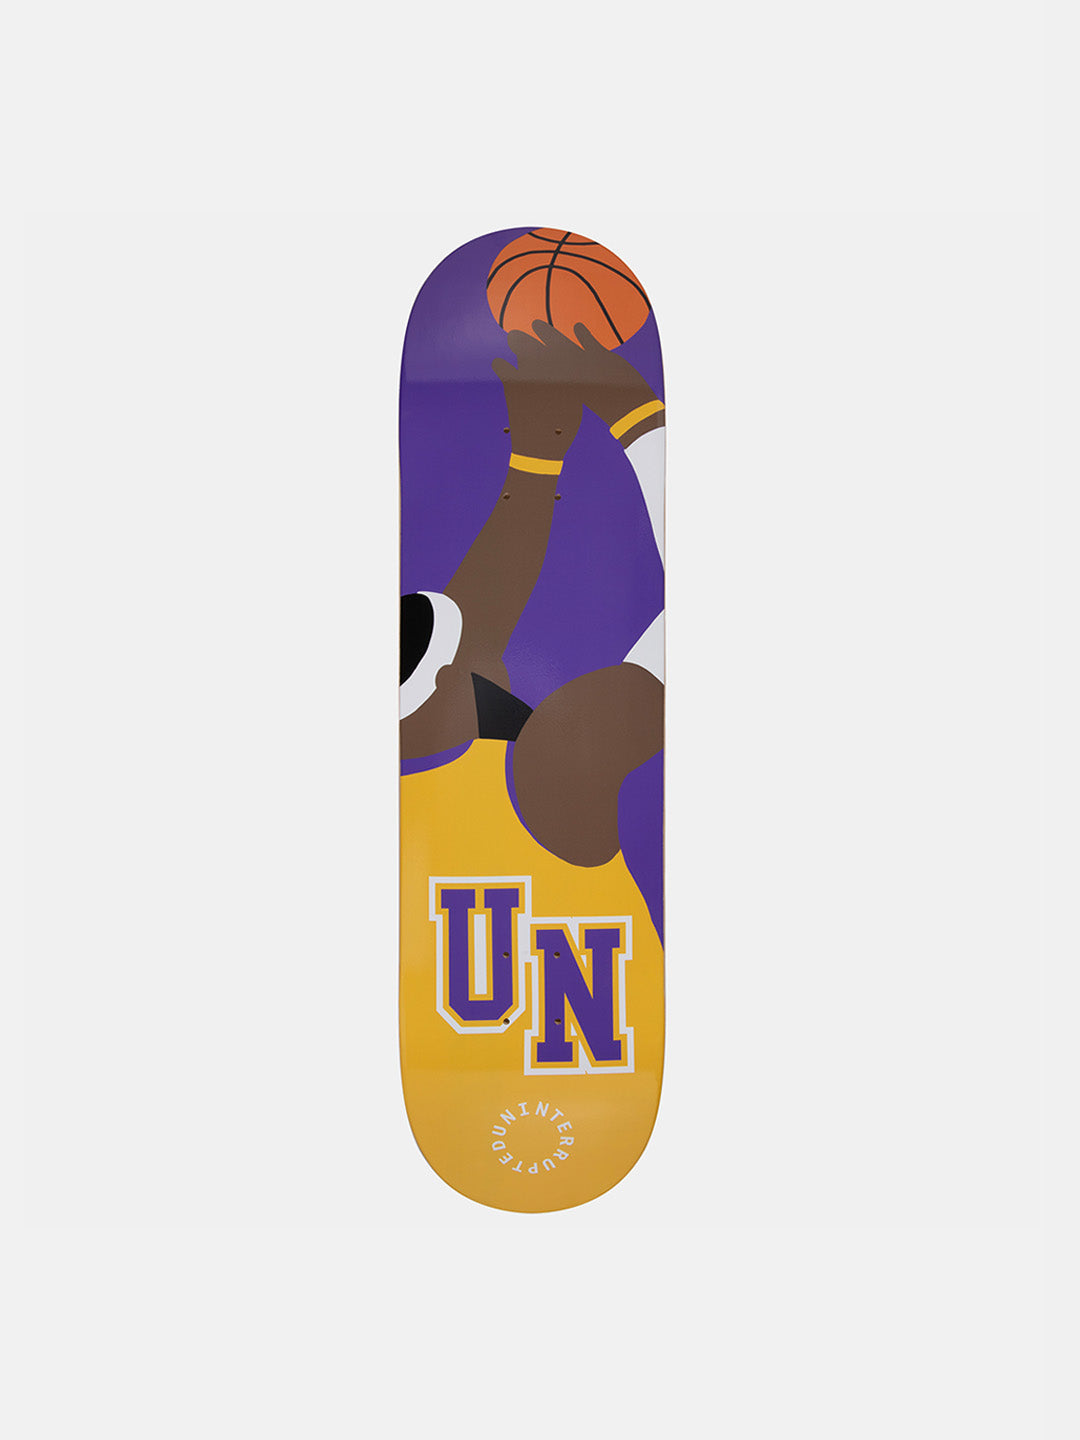 King James Shooting Record Skateboard Deck purple and yellow graphic design of lebron james shooting a basketball